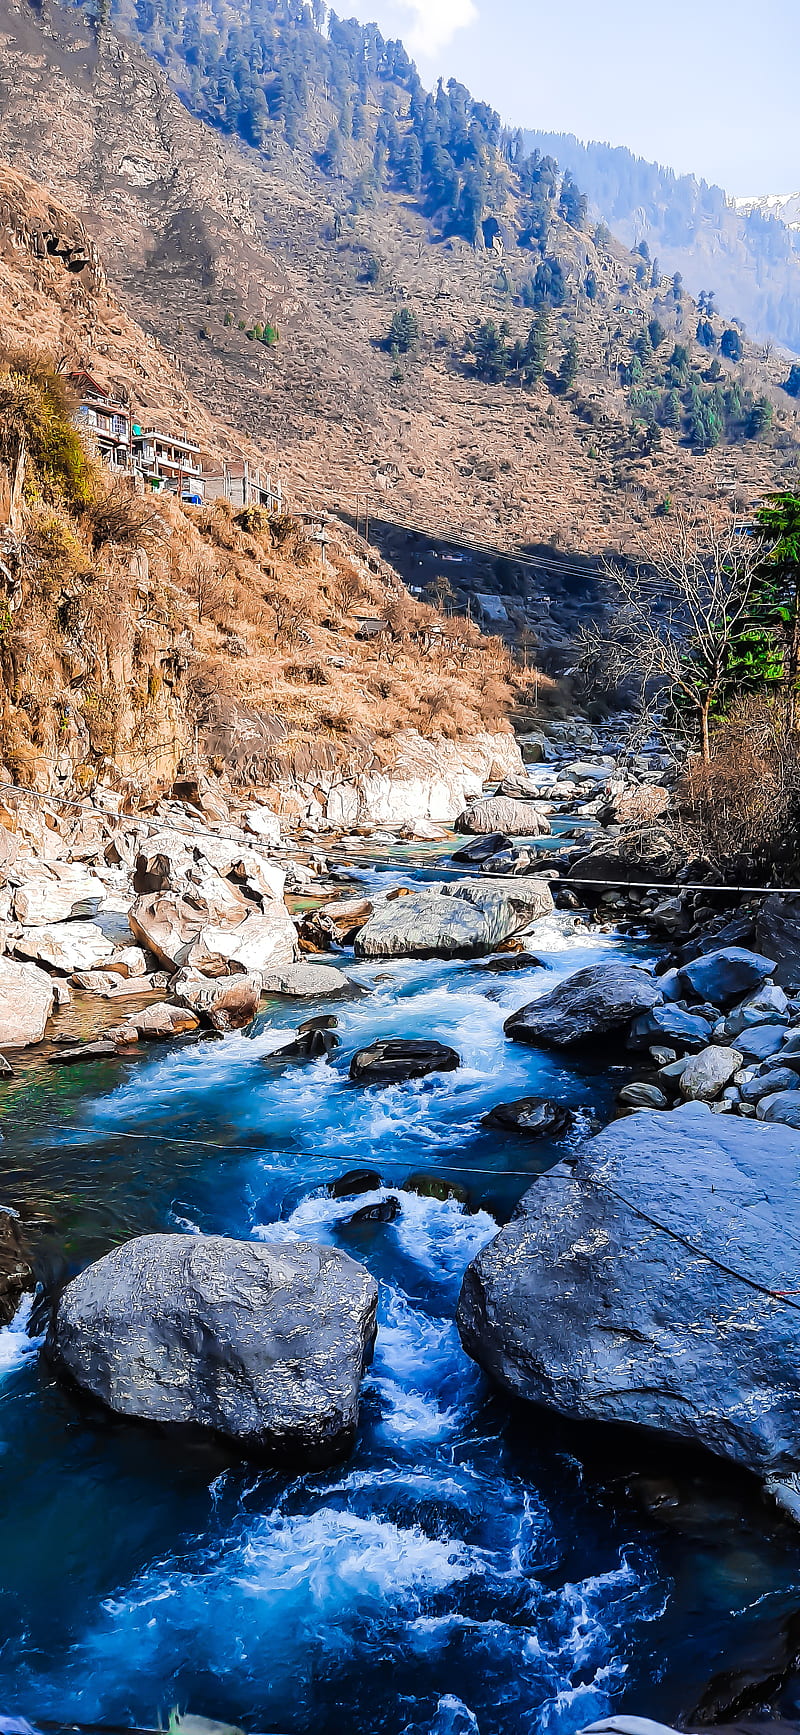 Thiên nhiên, nền, tốt nhất, rơi vào, thiên nhiên, Himachal Pradesh, iphone... Những từ này đủ để mô tả cho bức ảnh hoàn hảo về thiên nhiên bạn sắp chiêm ngưỡng. Hãy thưởng thức hình ảnh và trải nghiệm sự thanh bình của Himachal Pradesh trong màn hình của bạn. 